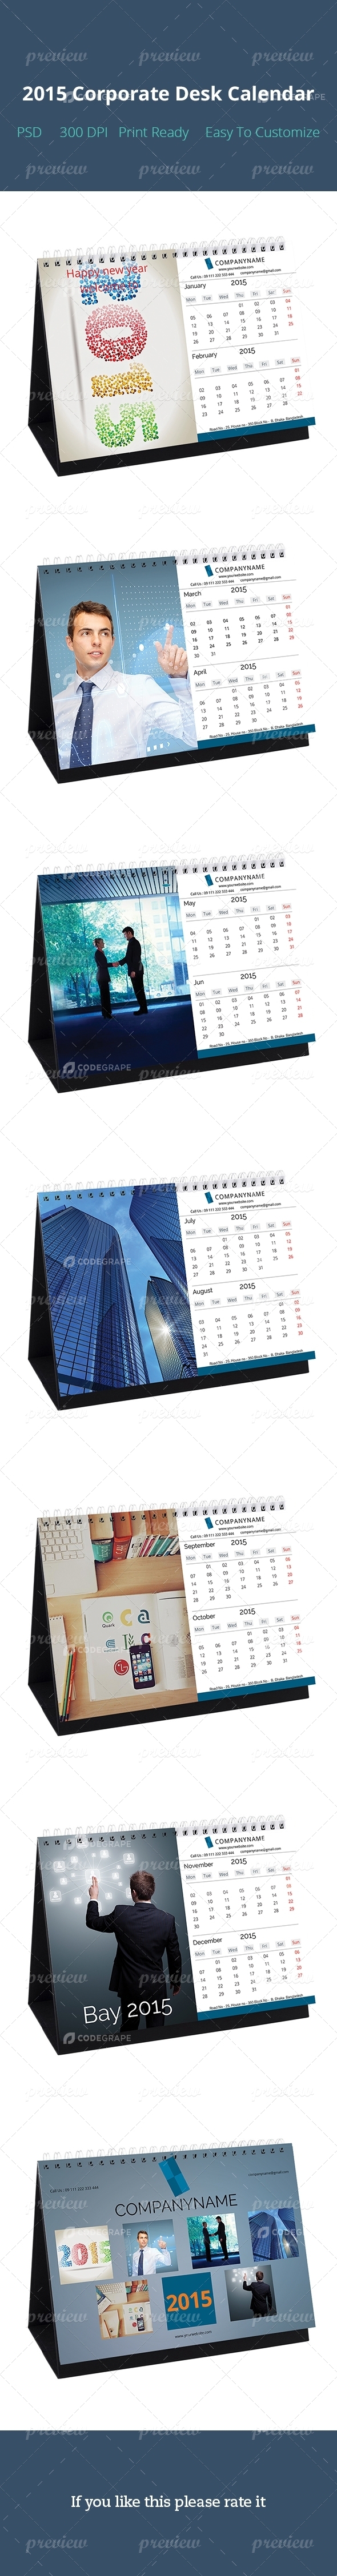 2015 Corporate Desk Calendar